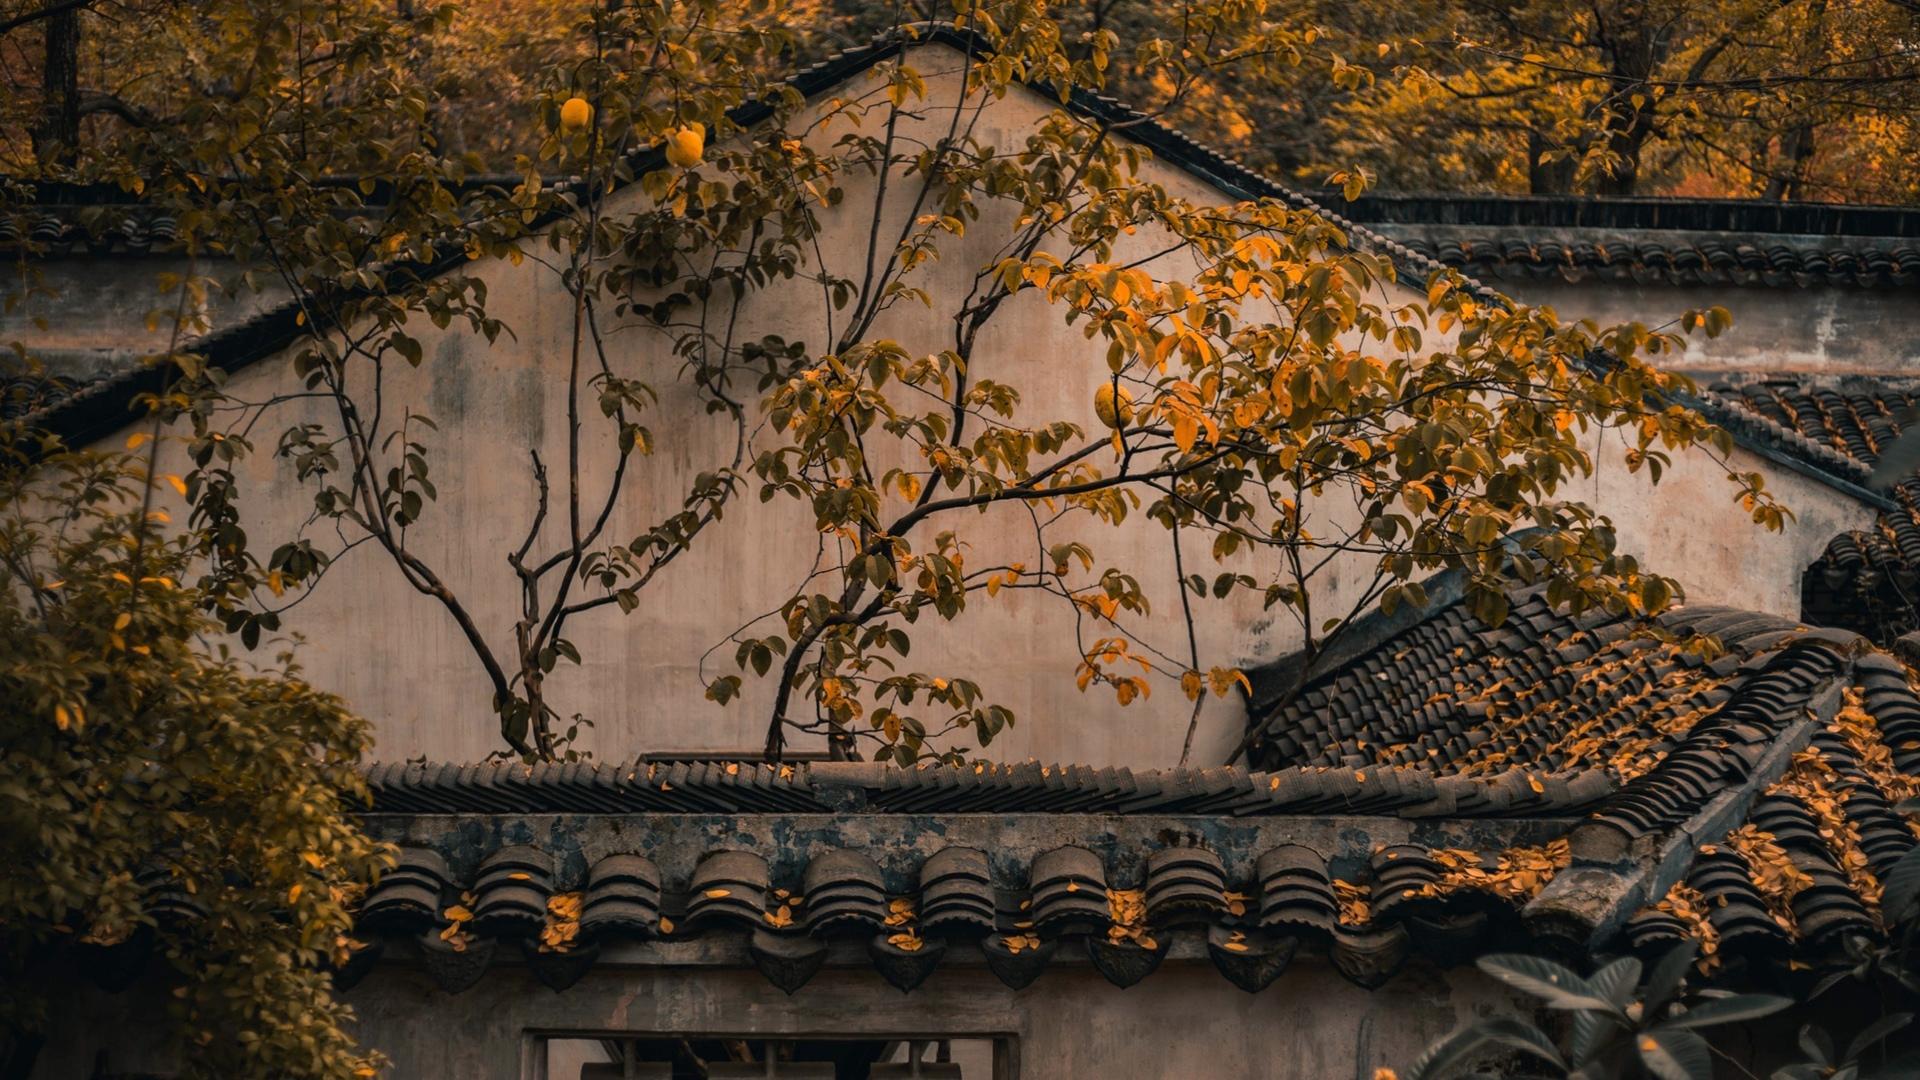 中国四大名园之一苏州拙政园里的老墙，黑瓦，落叶等复古色意境图片